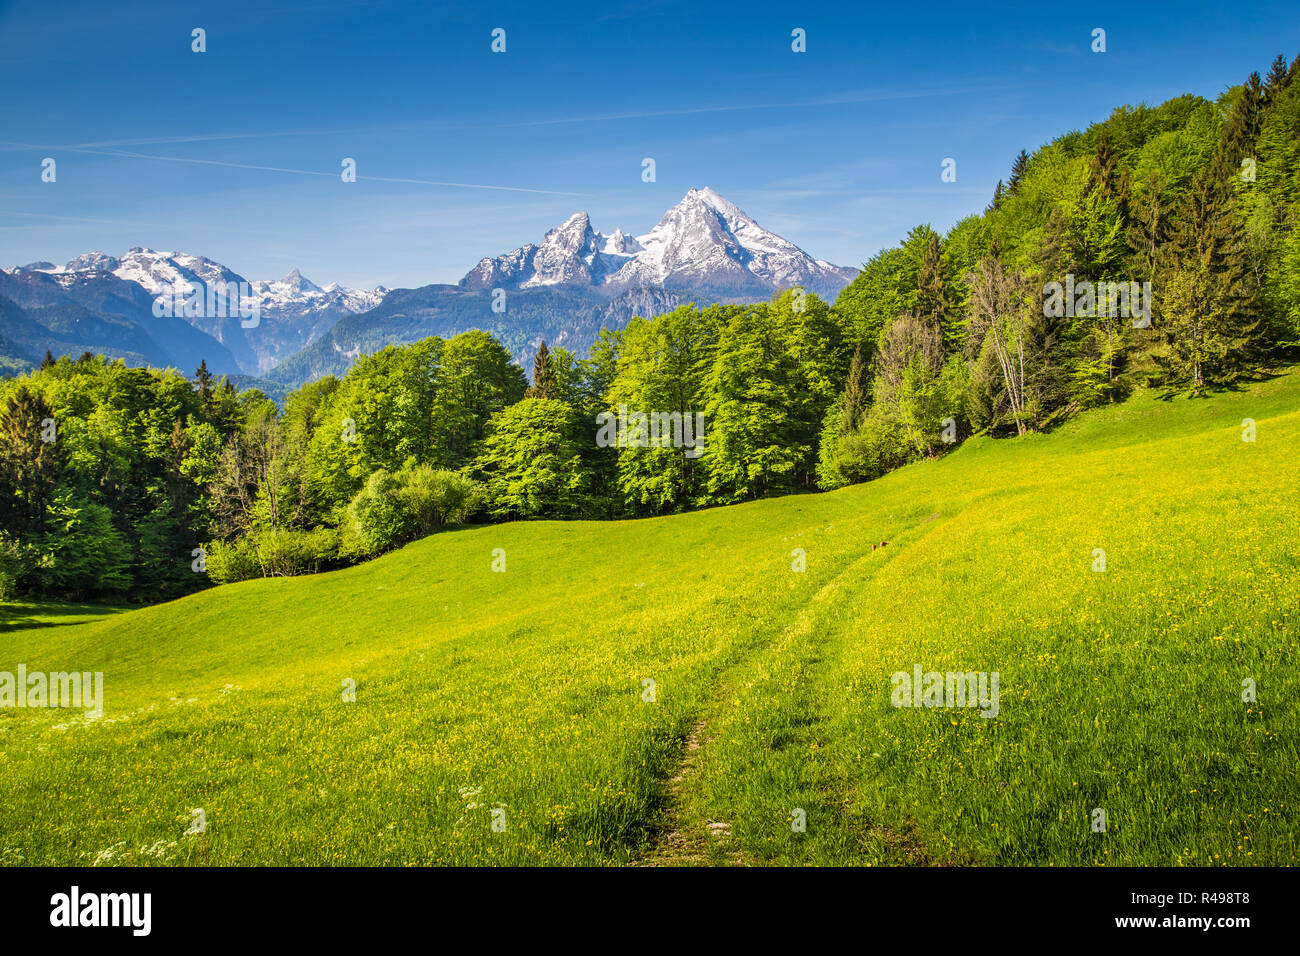 Paysage idyllique dans les Alpes avec des prairies vertes et de fleurs et les sommets des montagnes enneigées en arrière-plan Banque D'Images